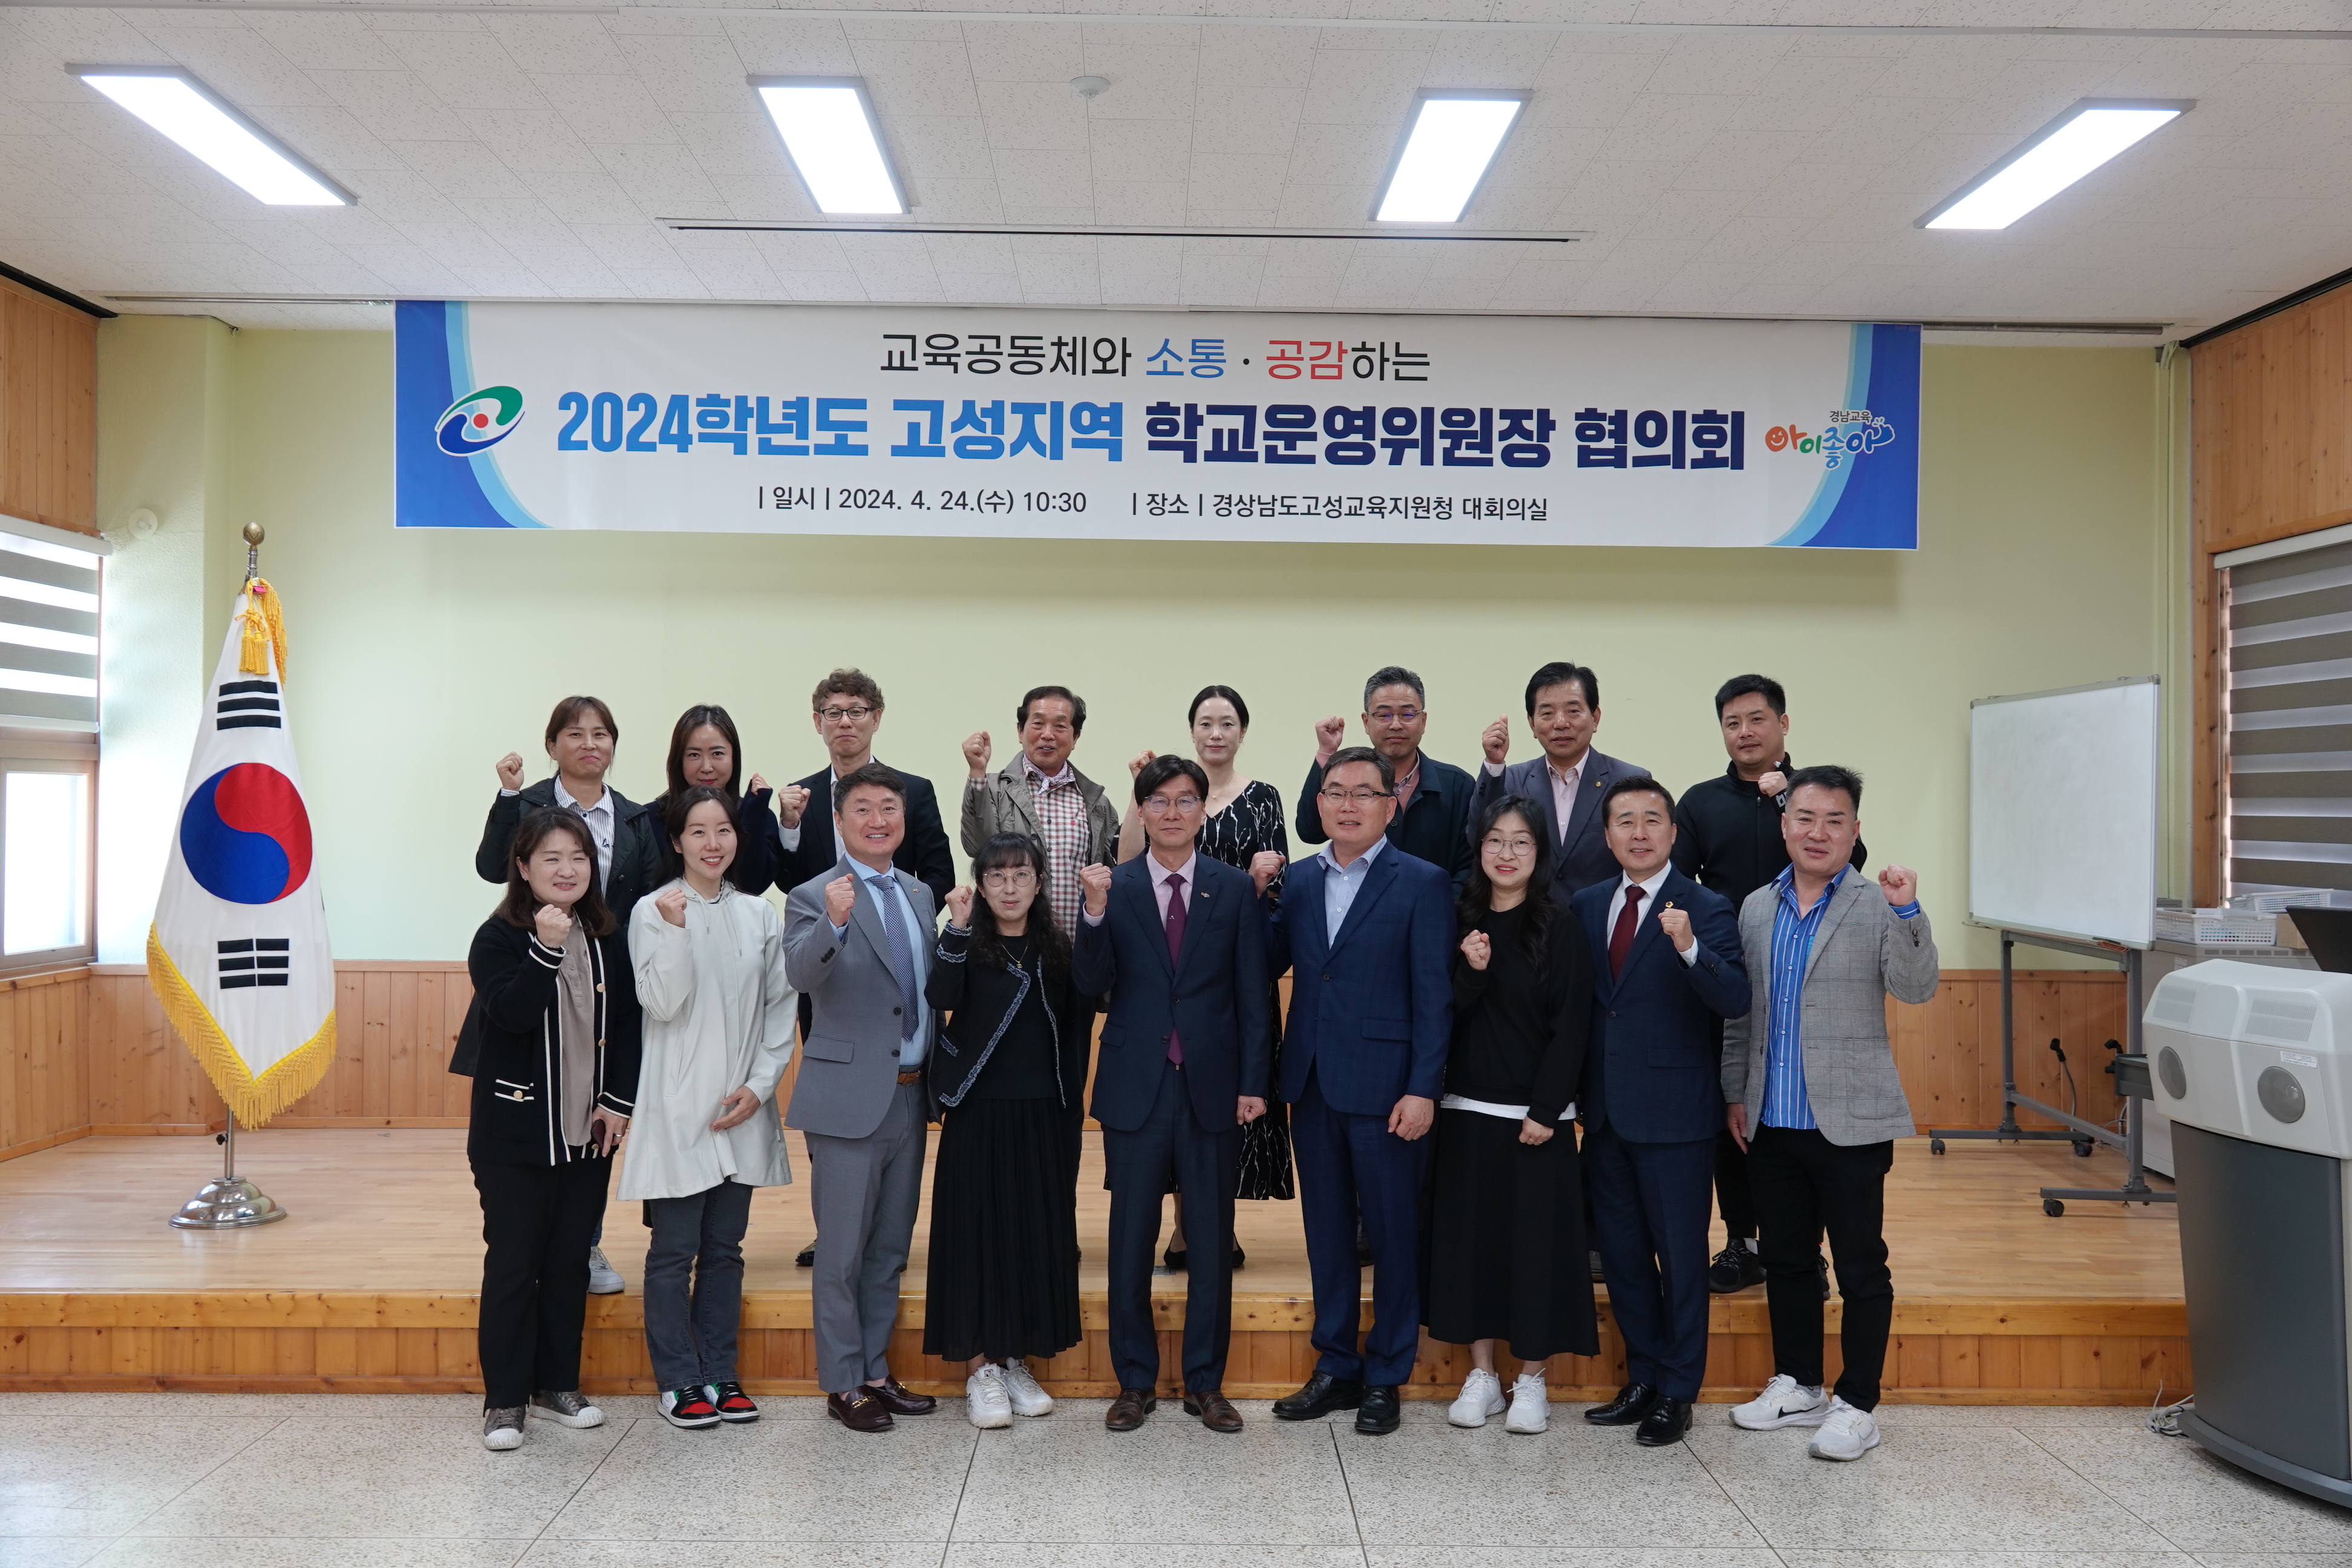 
															
															
																
																	고성교육지원청, 2024학년도 고성지역  학교운영위원장 협의회 개최 [3번째 이미지]
																
																
															
														